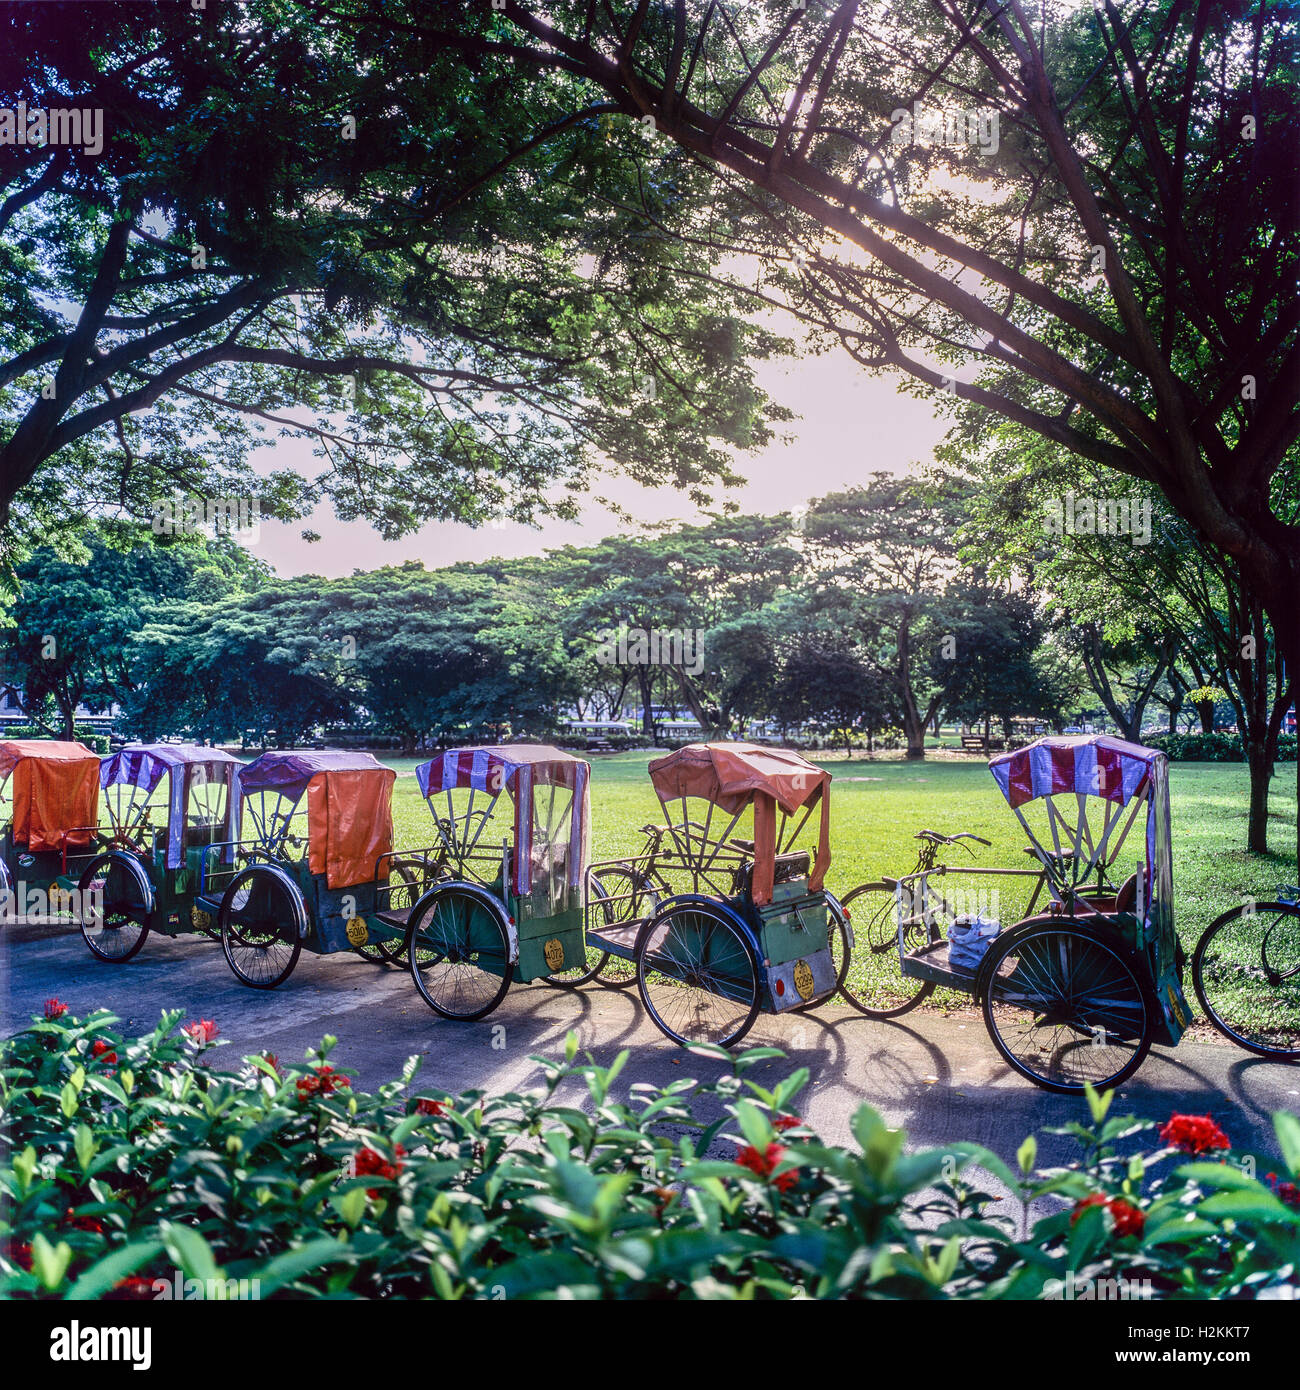 Trishaws for hire, Singapore, Asia Stock Photo